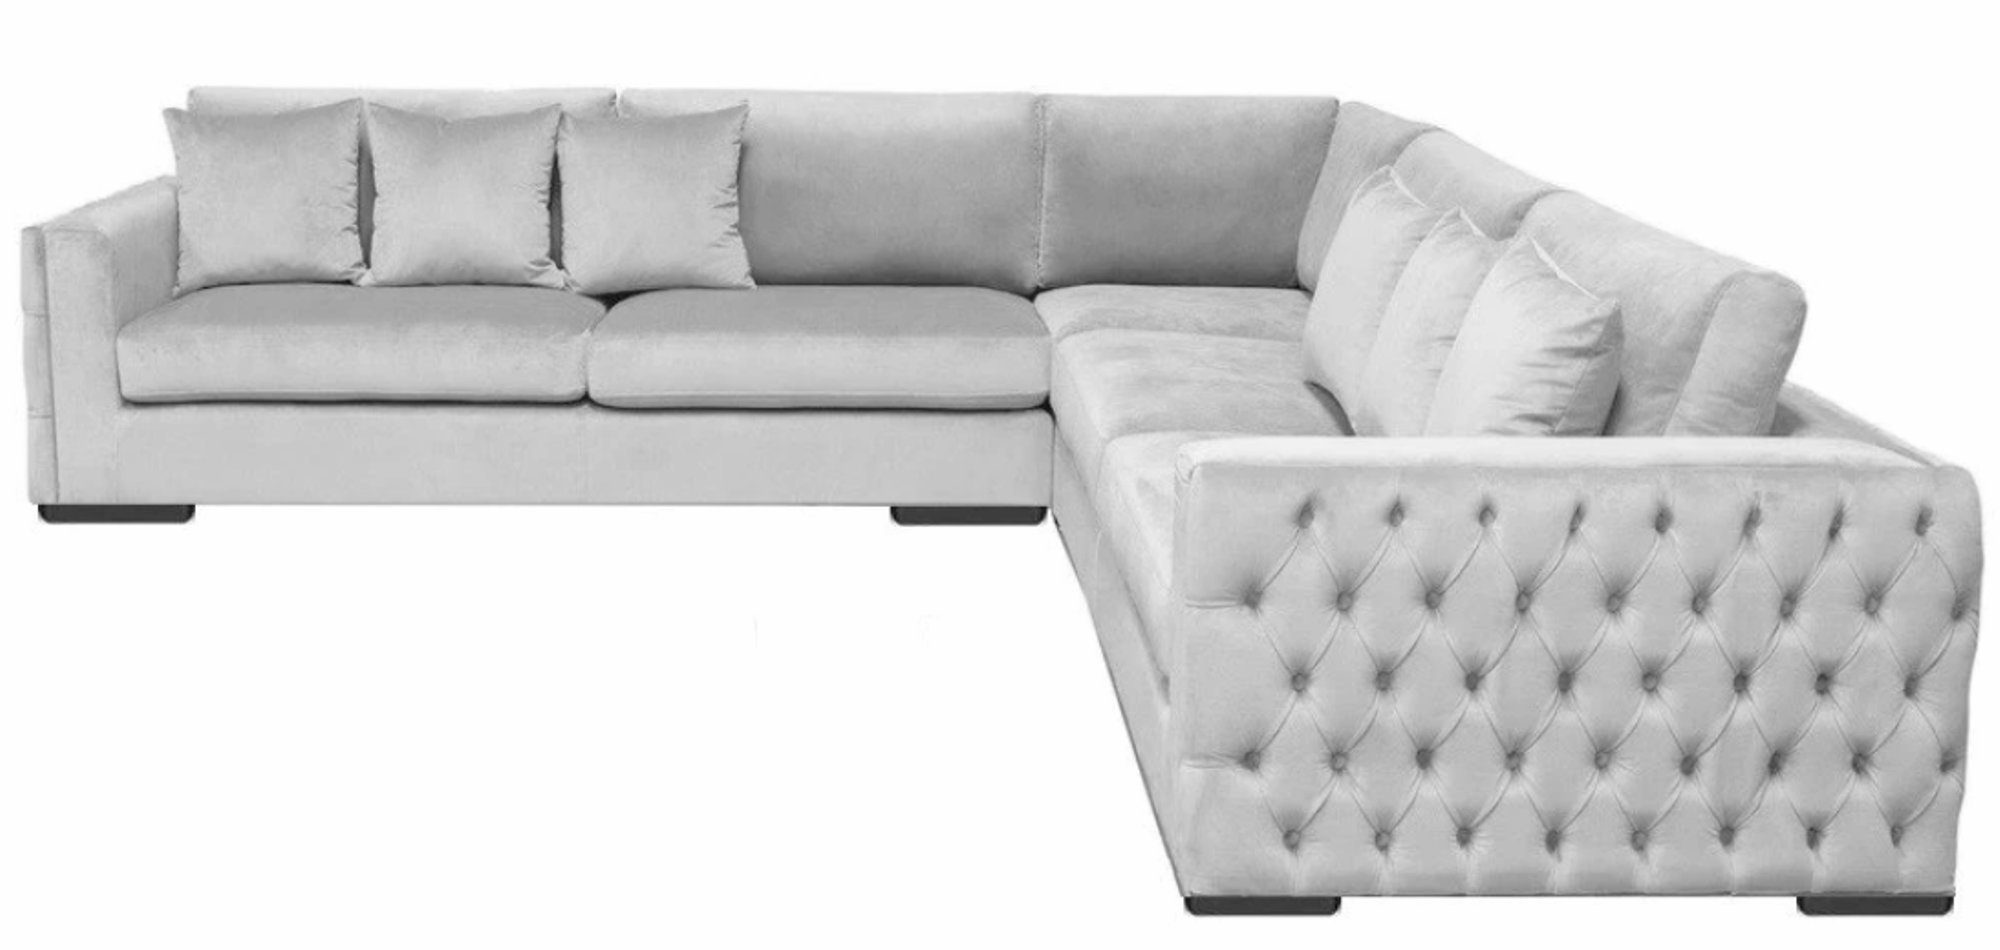 JVmoebel Ecksofa Luxus Silber Ecksofa moderne L-Form Couch Polstermöbel Neu, Made in Europe